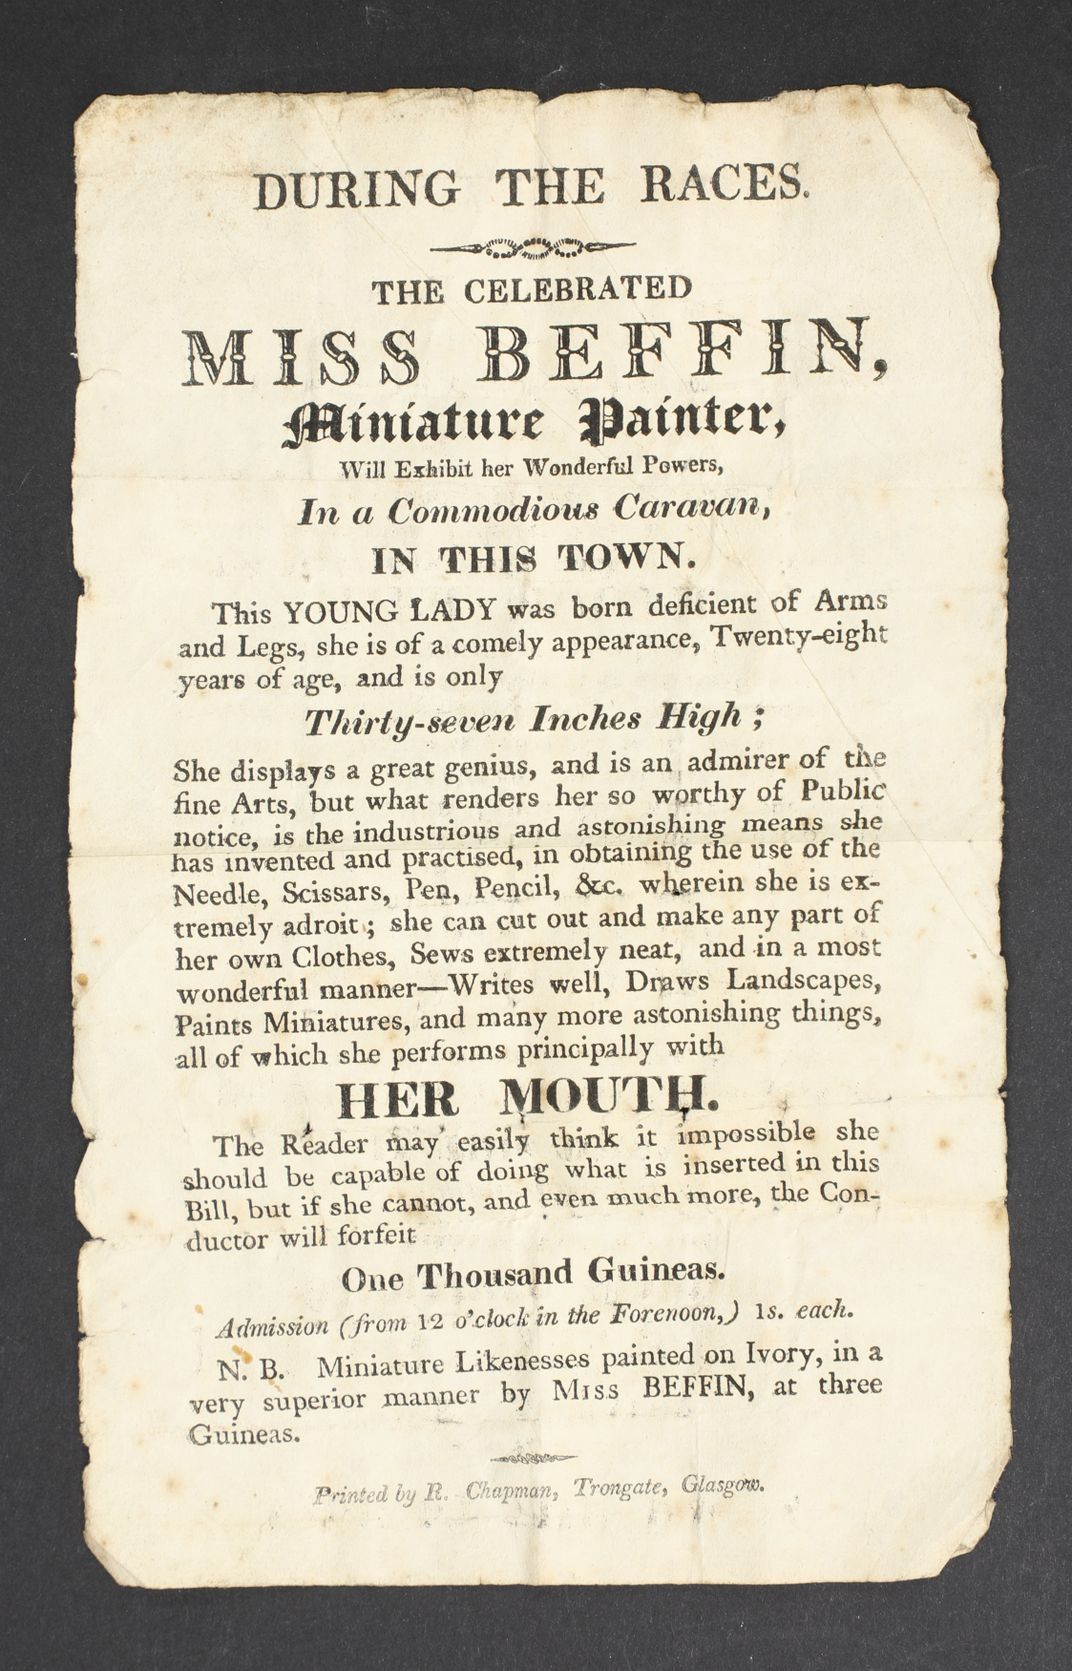 A handbill that advertises Miss Biffin, Miniature Painter